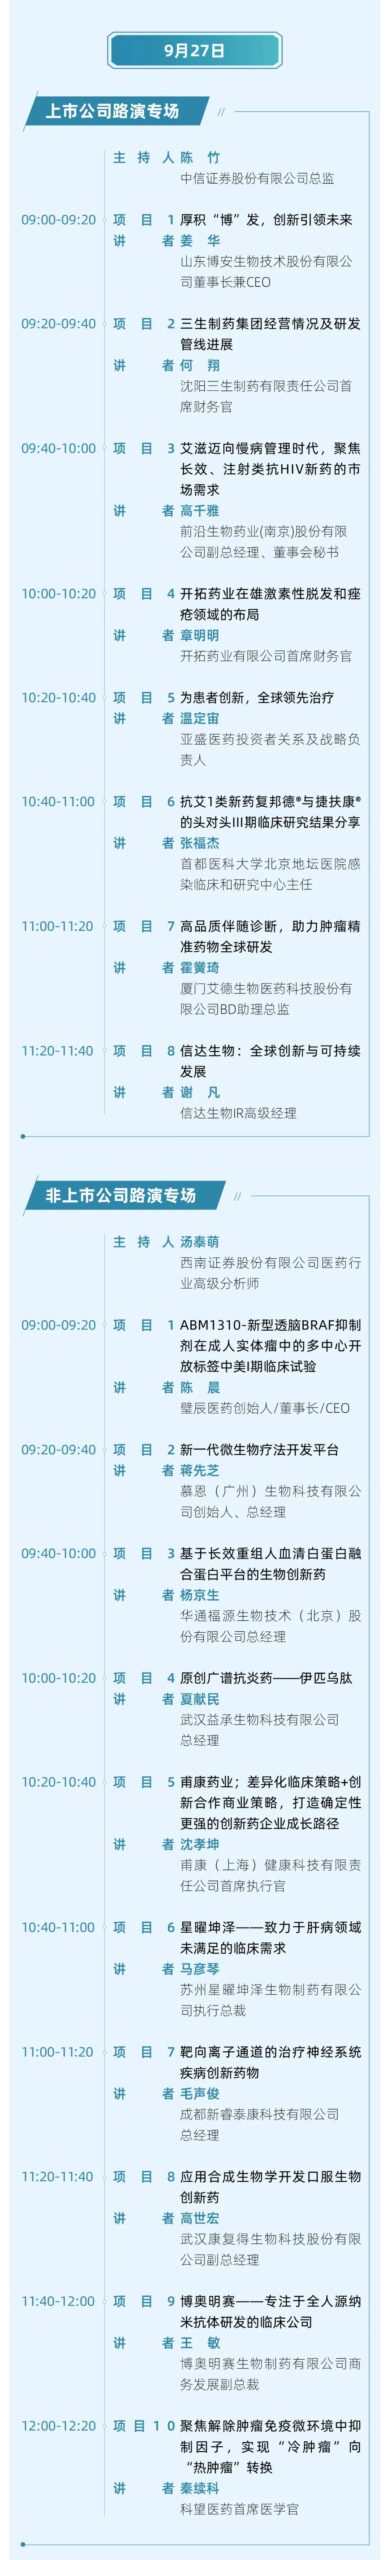 华章日新丨第八届中国医药创新与投资大会终版日程发布